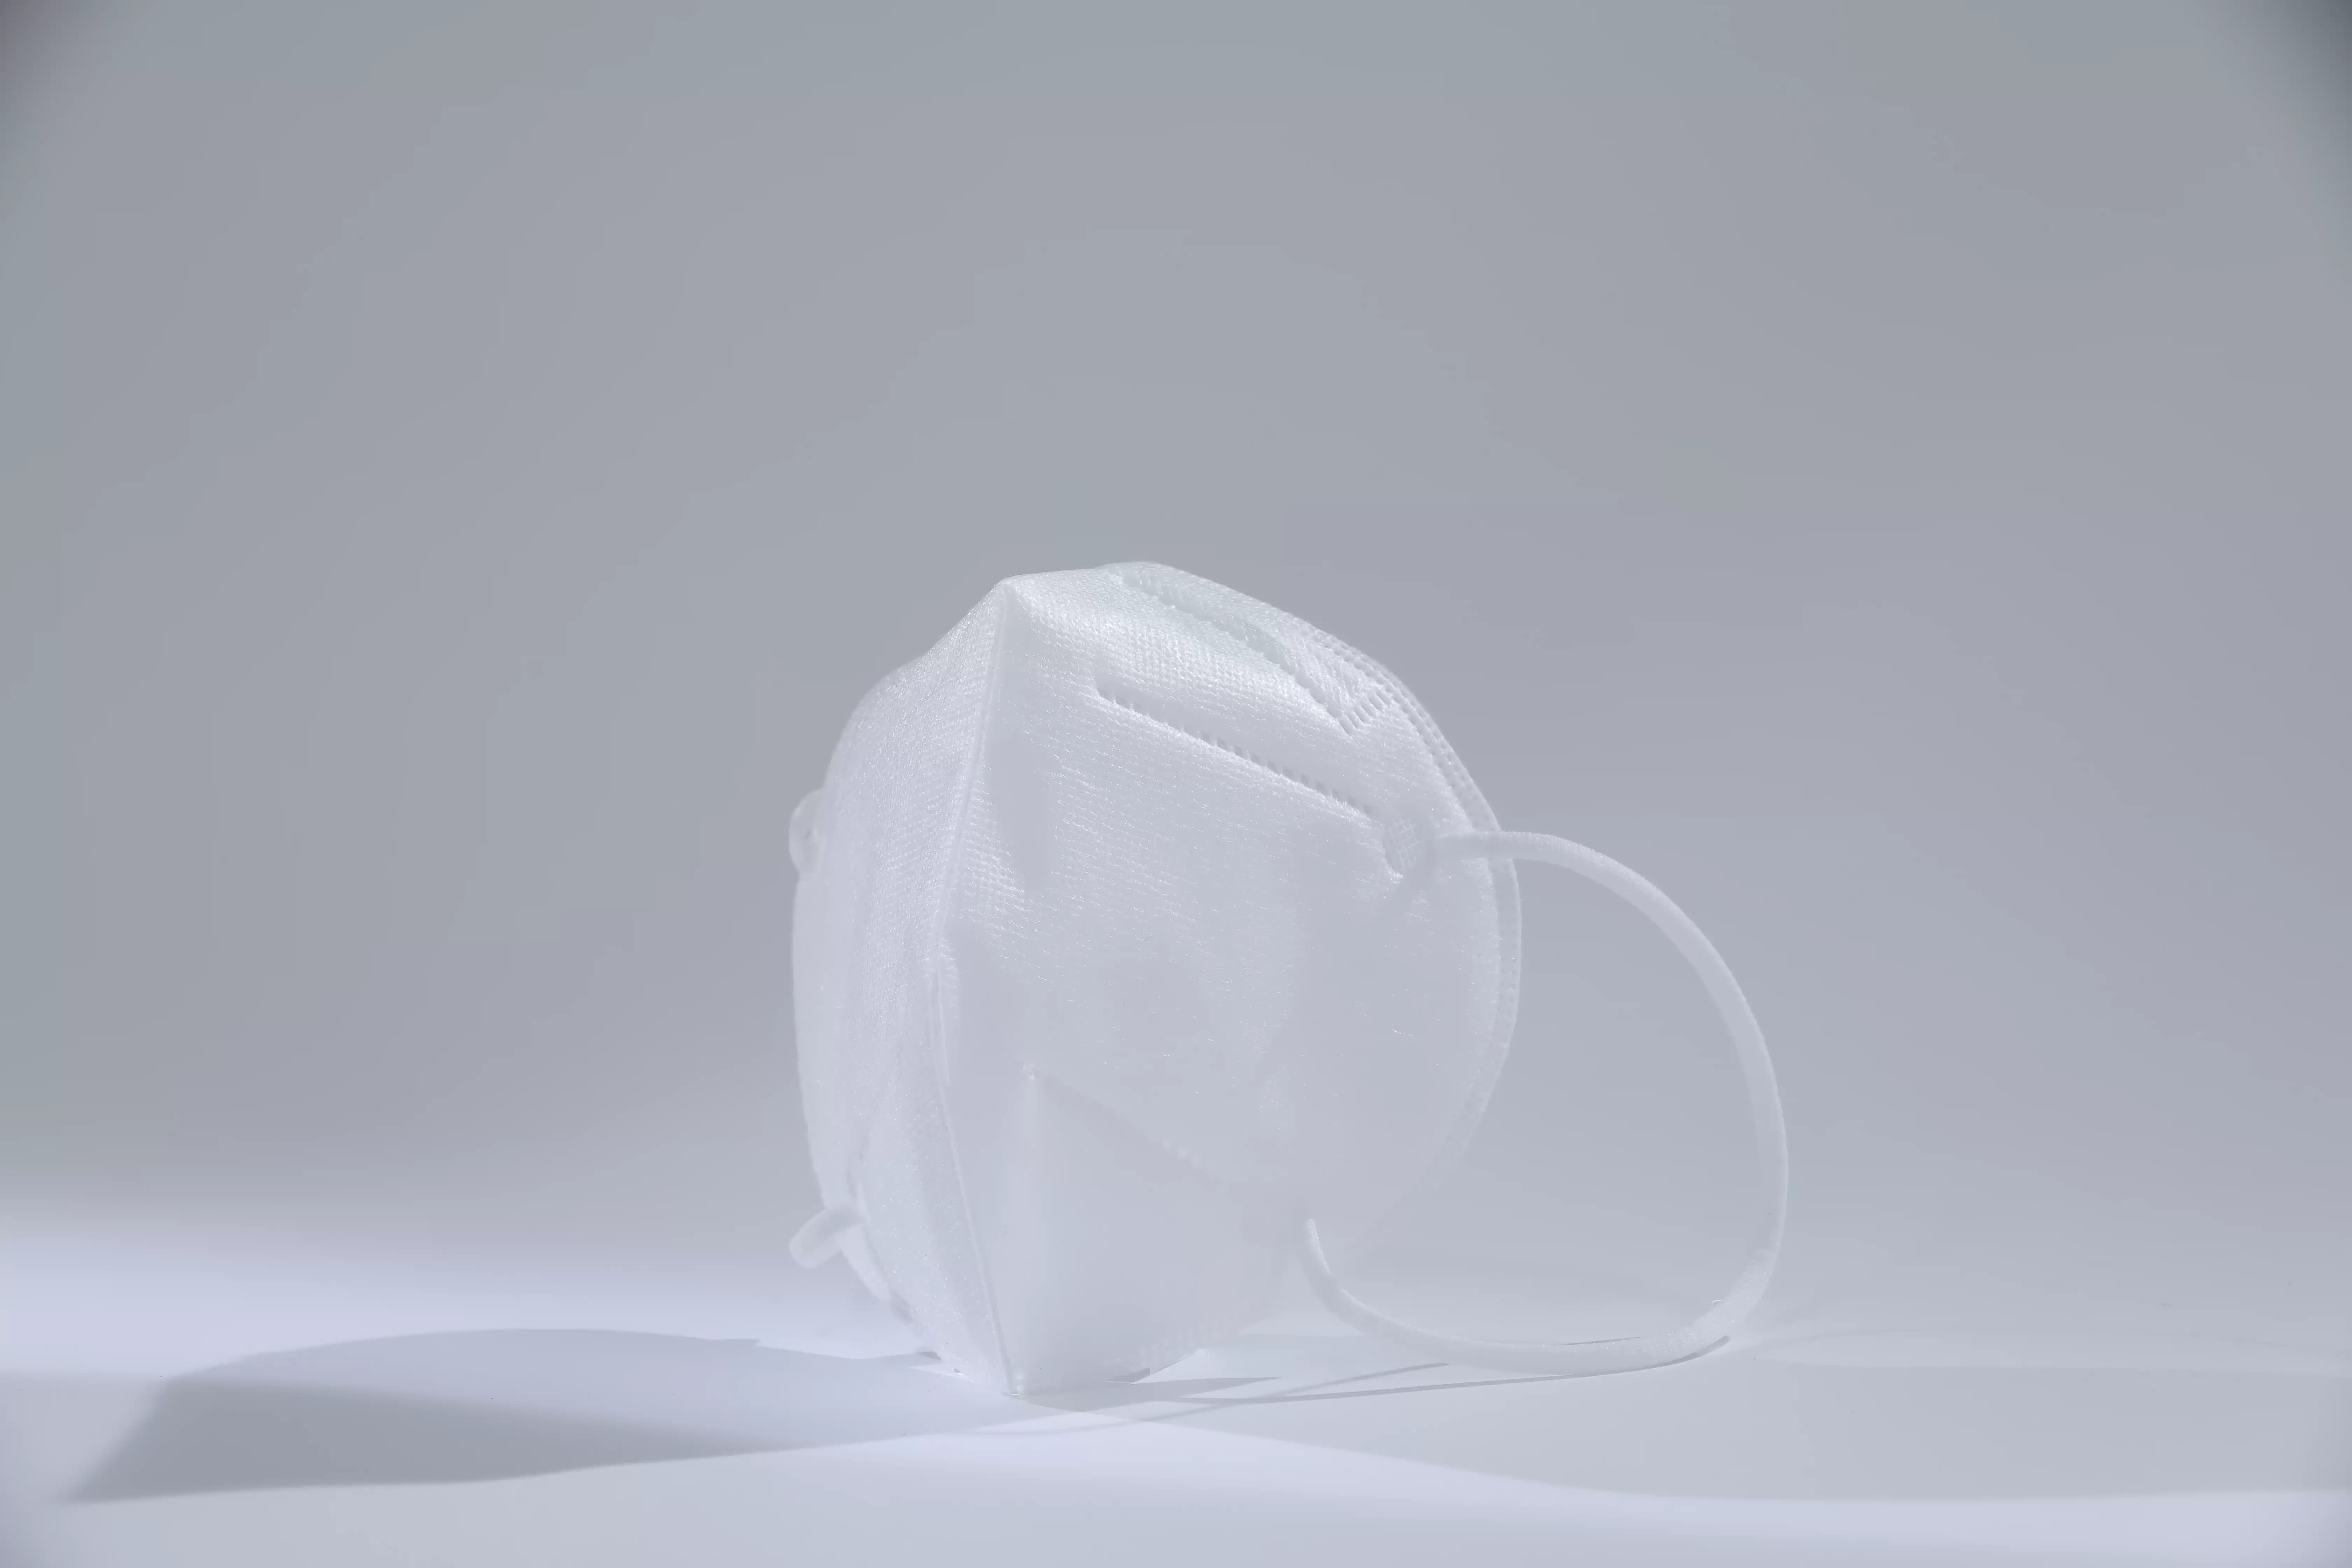 BRI Atemnot-Mund-Mund-Maske für Luftverschmutzung KN95 Medizinische Maske 50 Packung